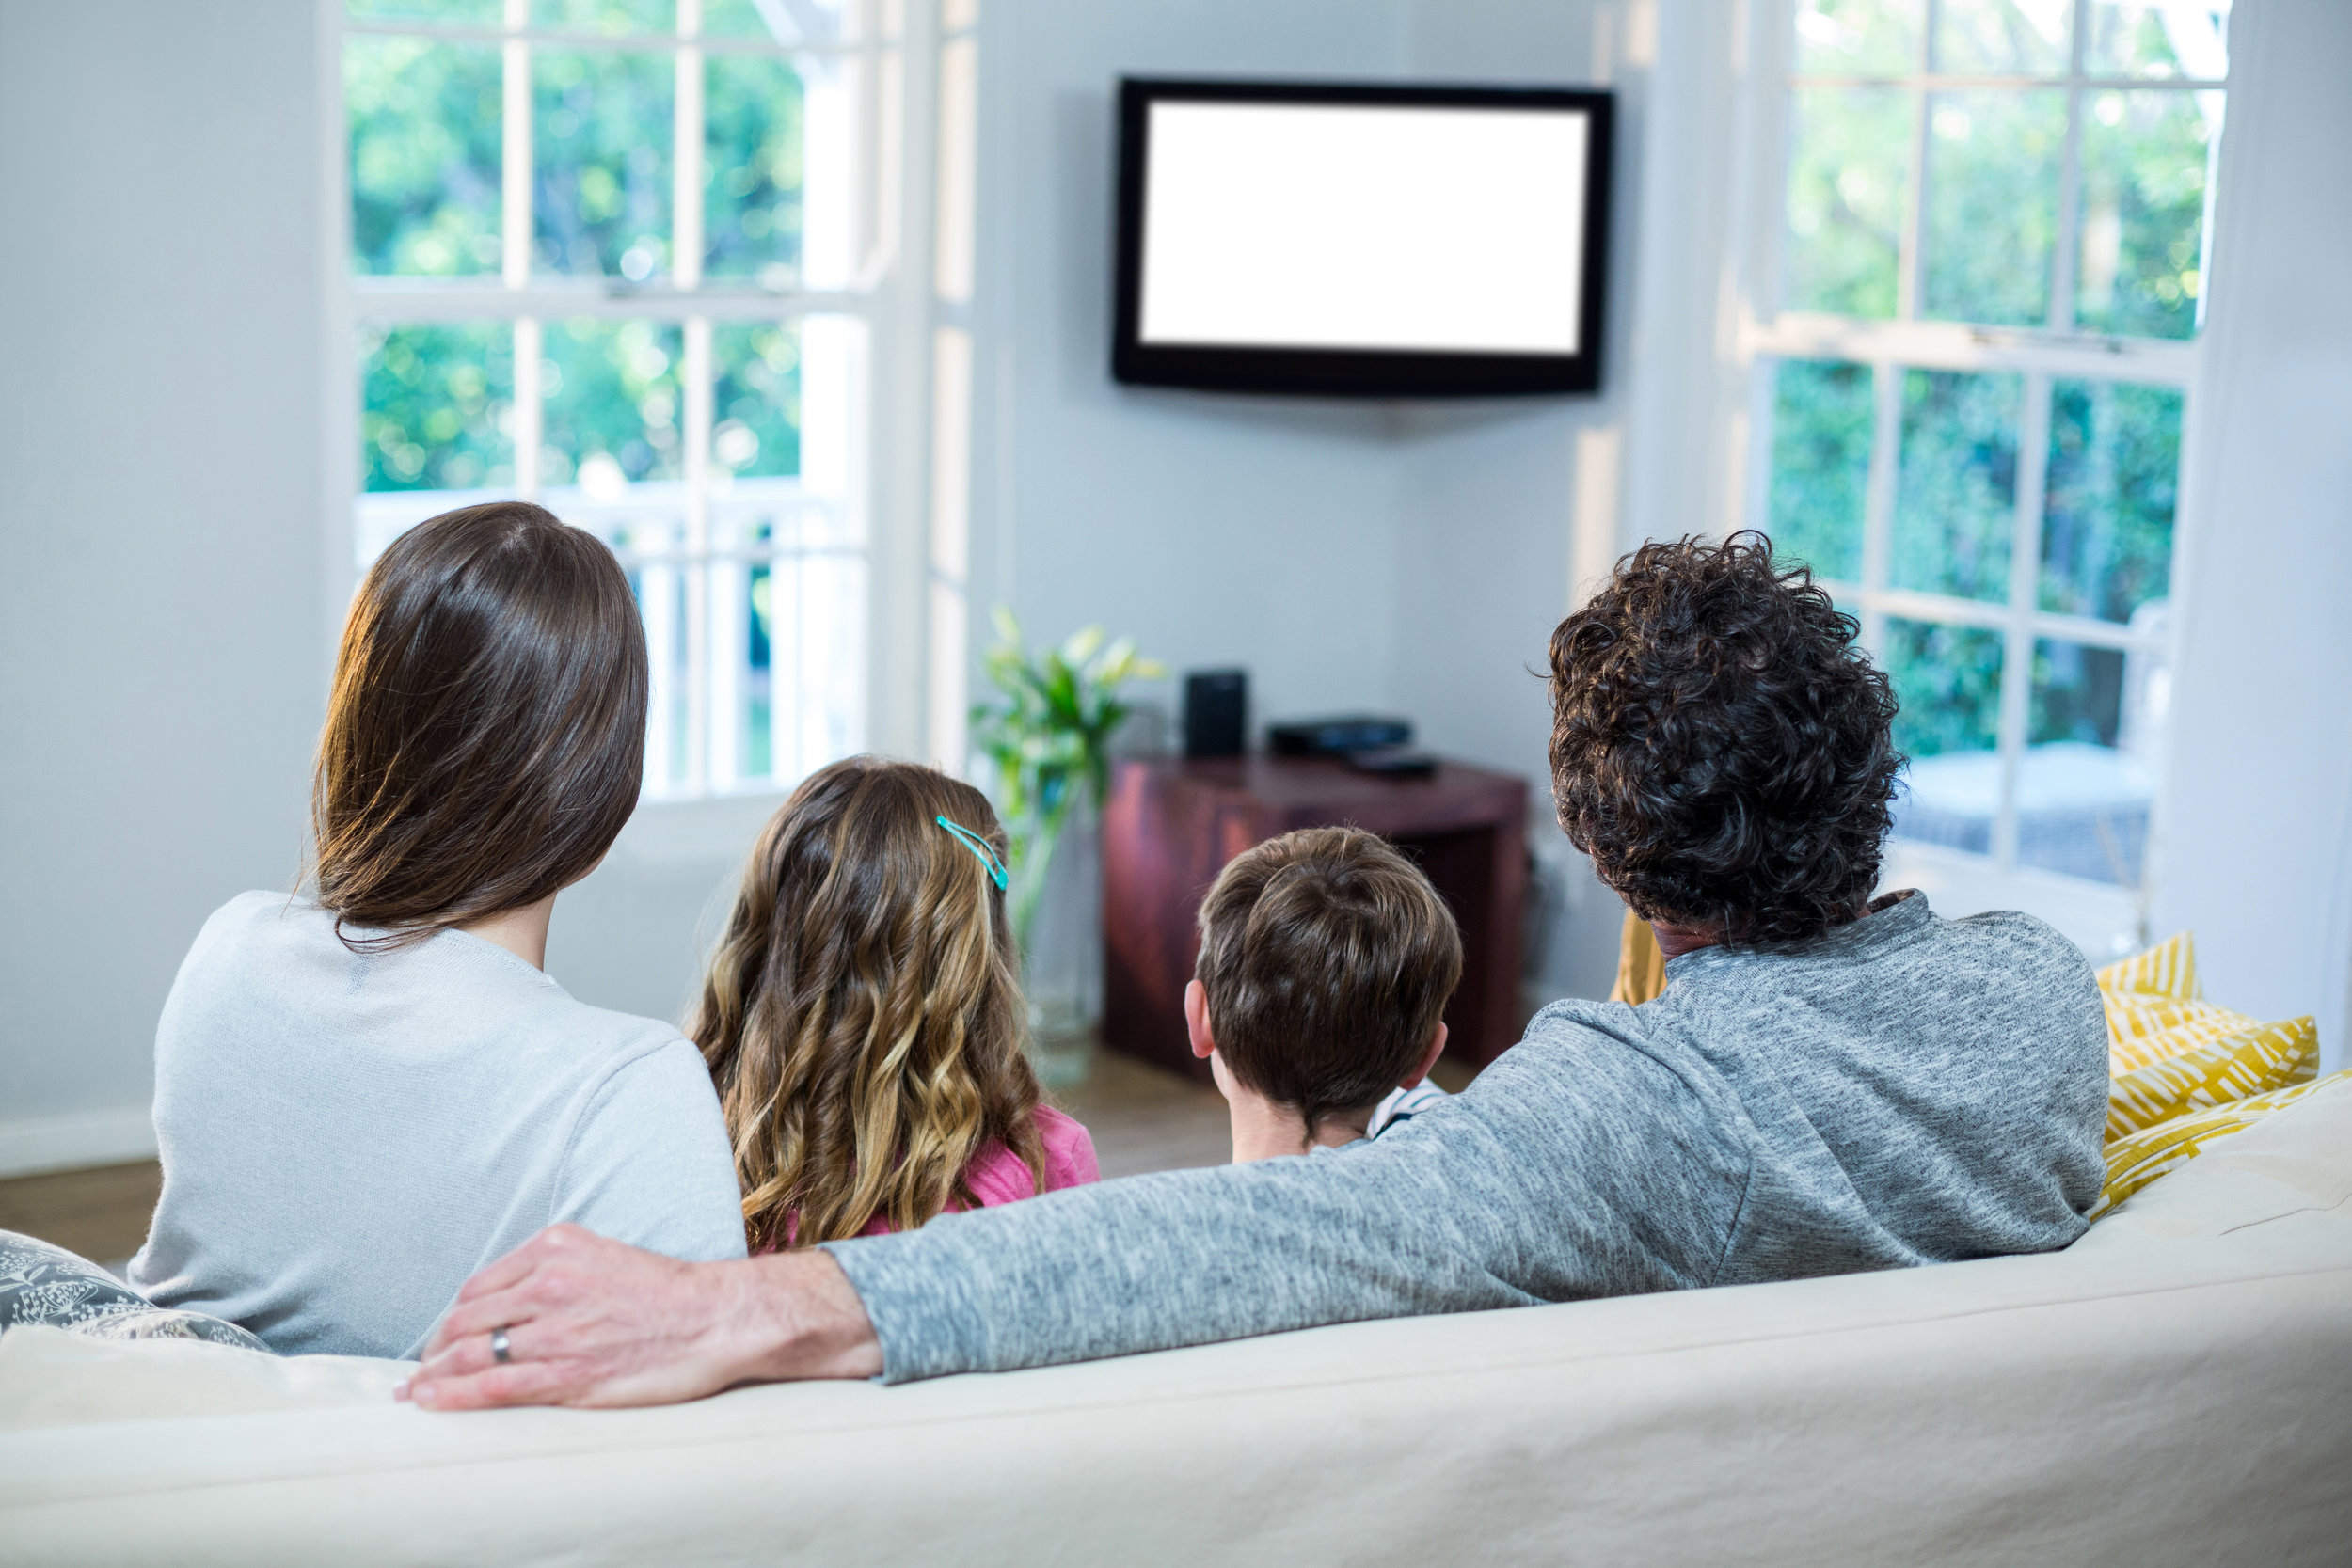 Пока родители смотрят телевизор. Человек на диване со спины. Семья на диване со спины. Семья смотрит телевизор. Семья сидит спиной.